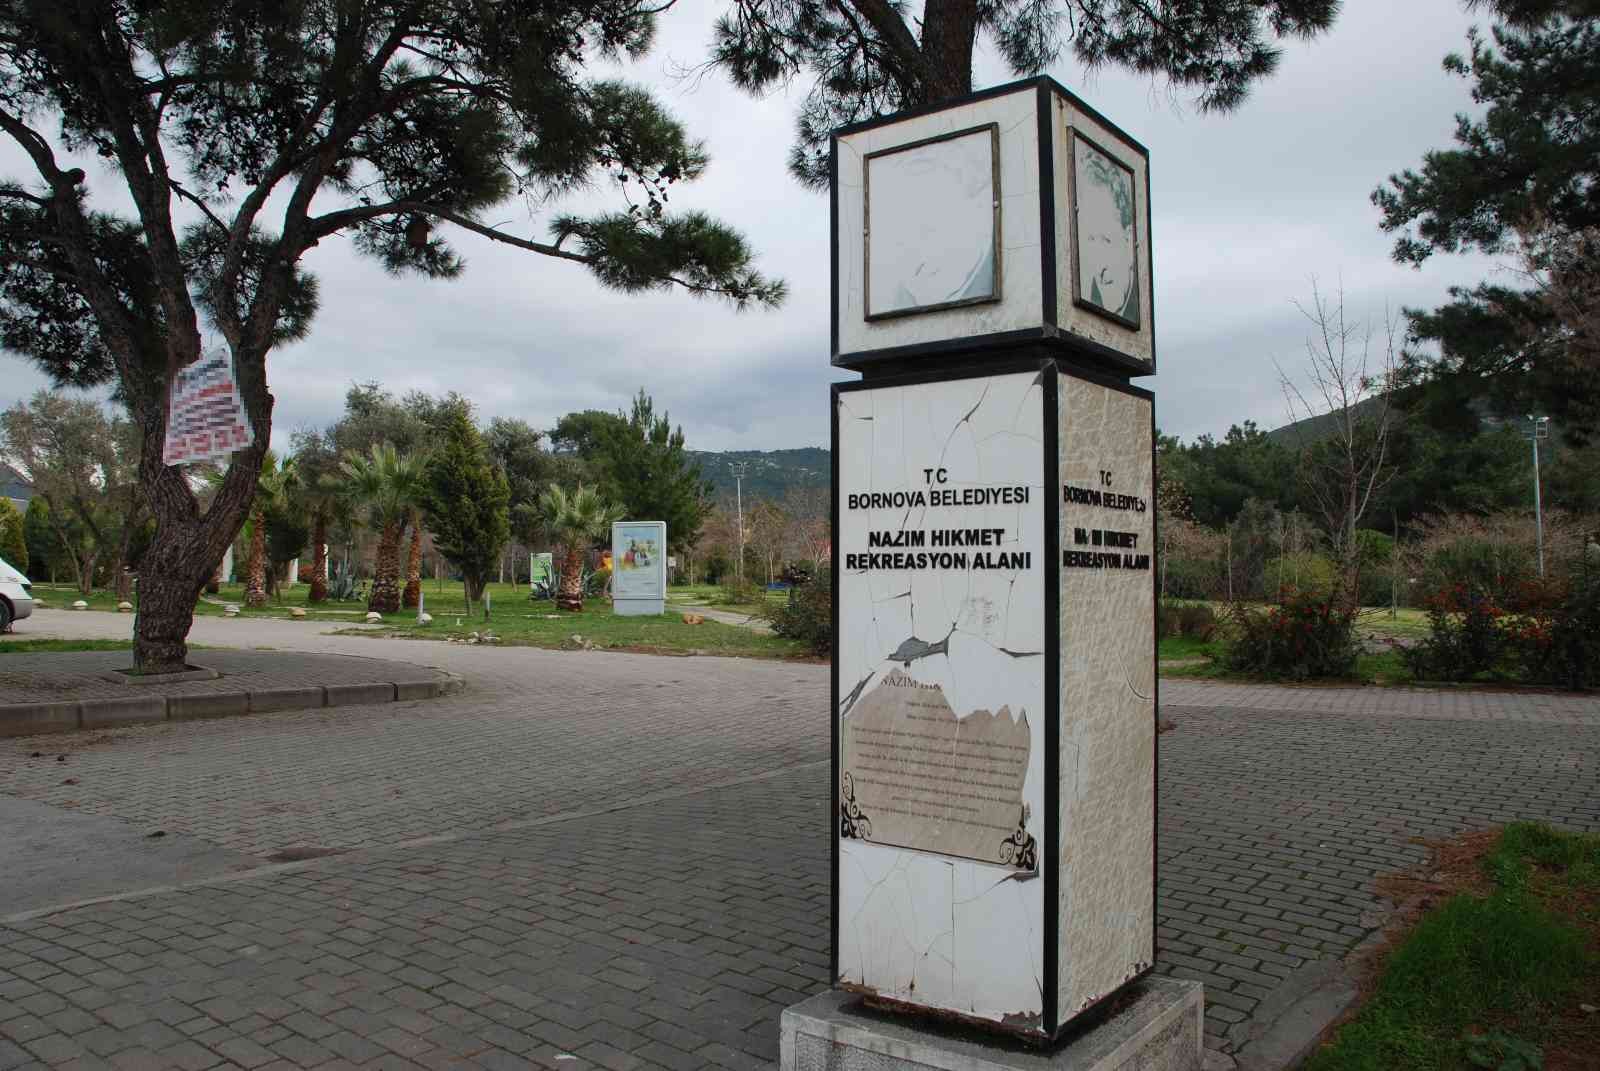 Nazım Hikmet Parkının bakımsızlığı tepki çekiyor #izmir